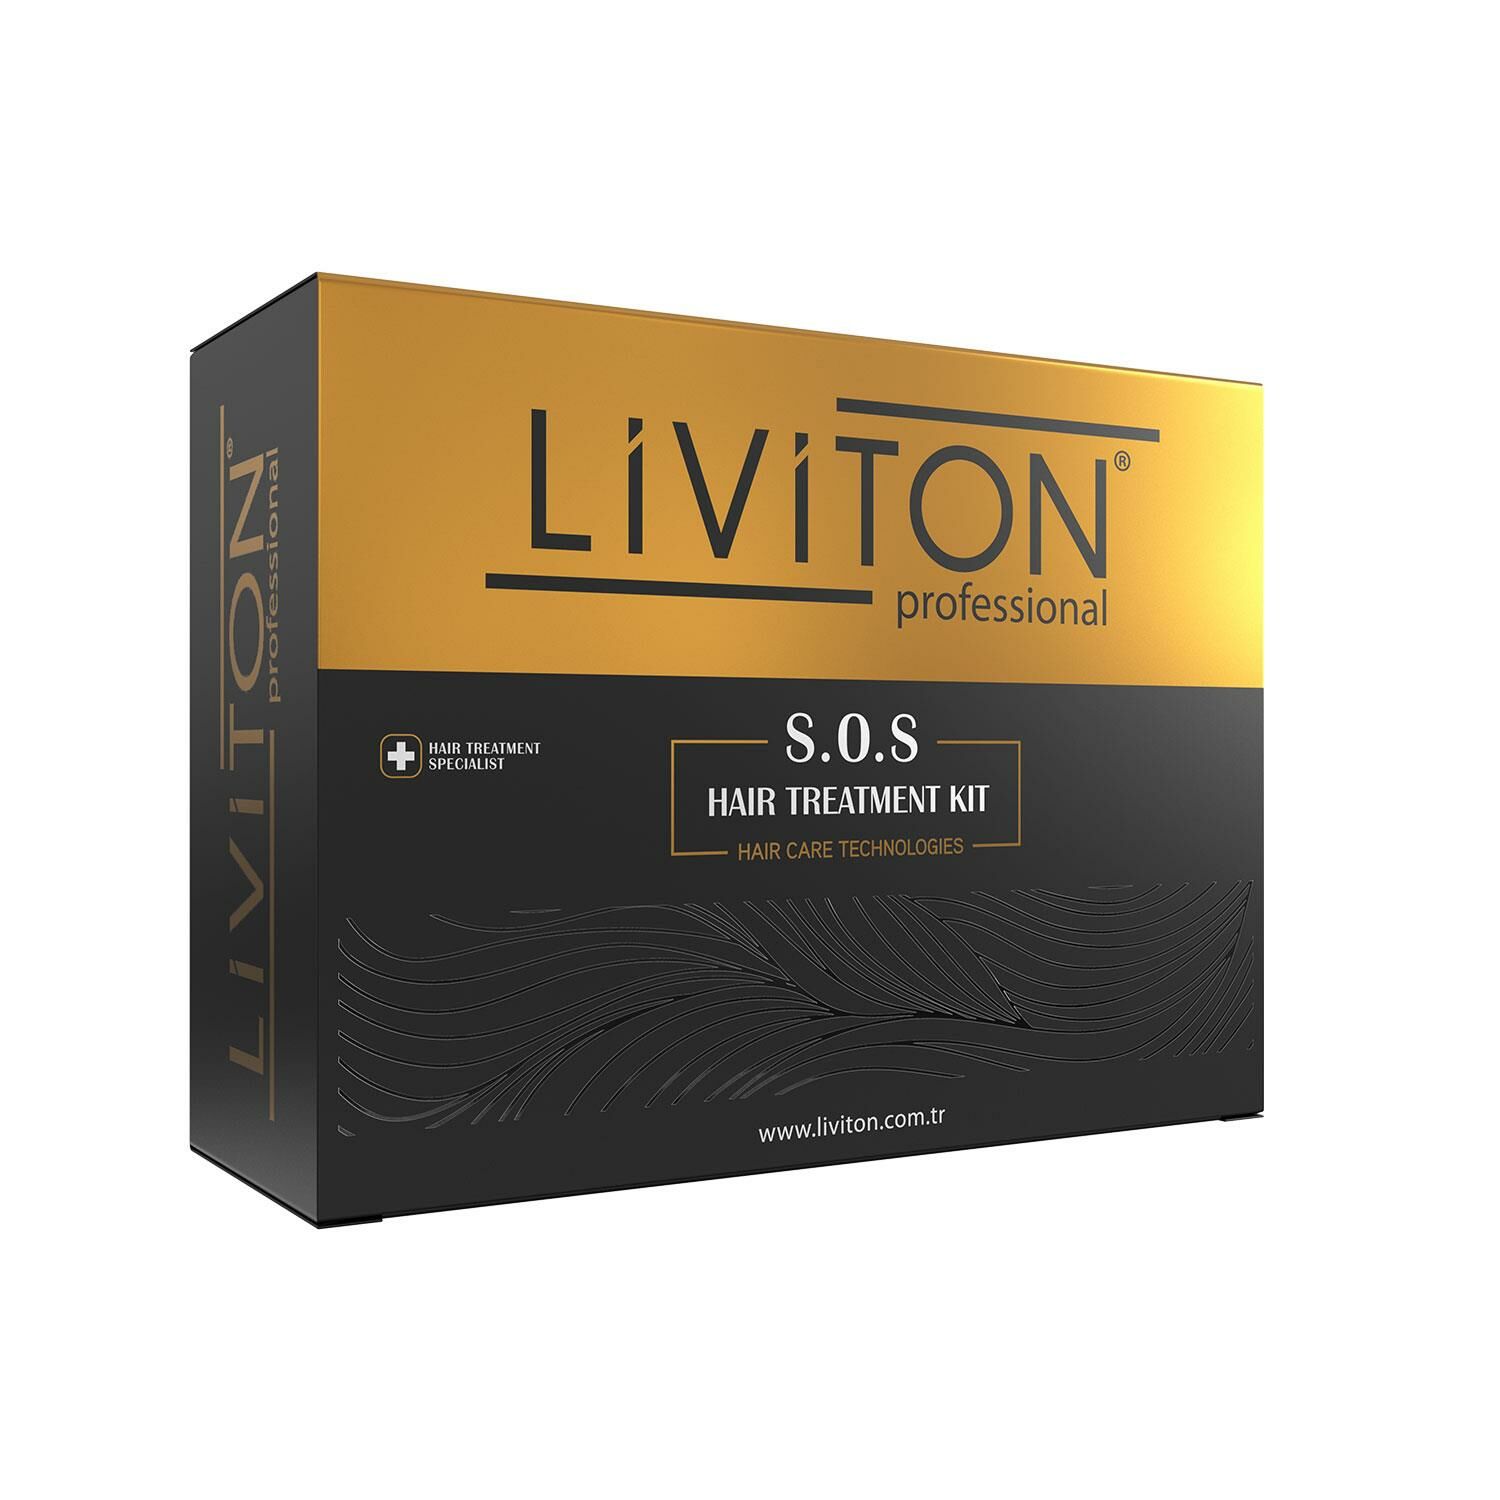 Liviton Professional S.O.S Saç Bakım Kiti 100 ml